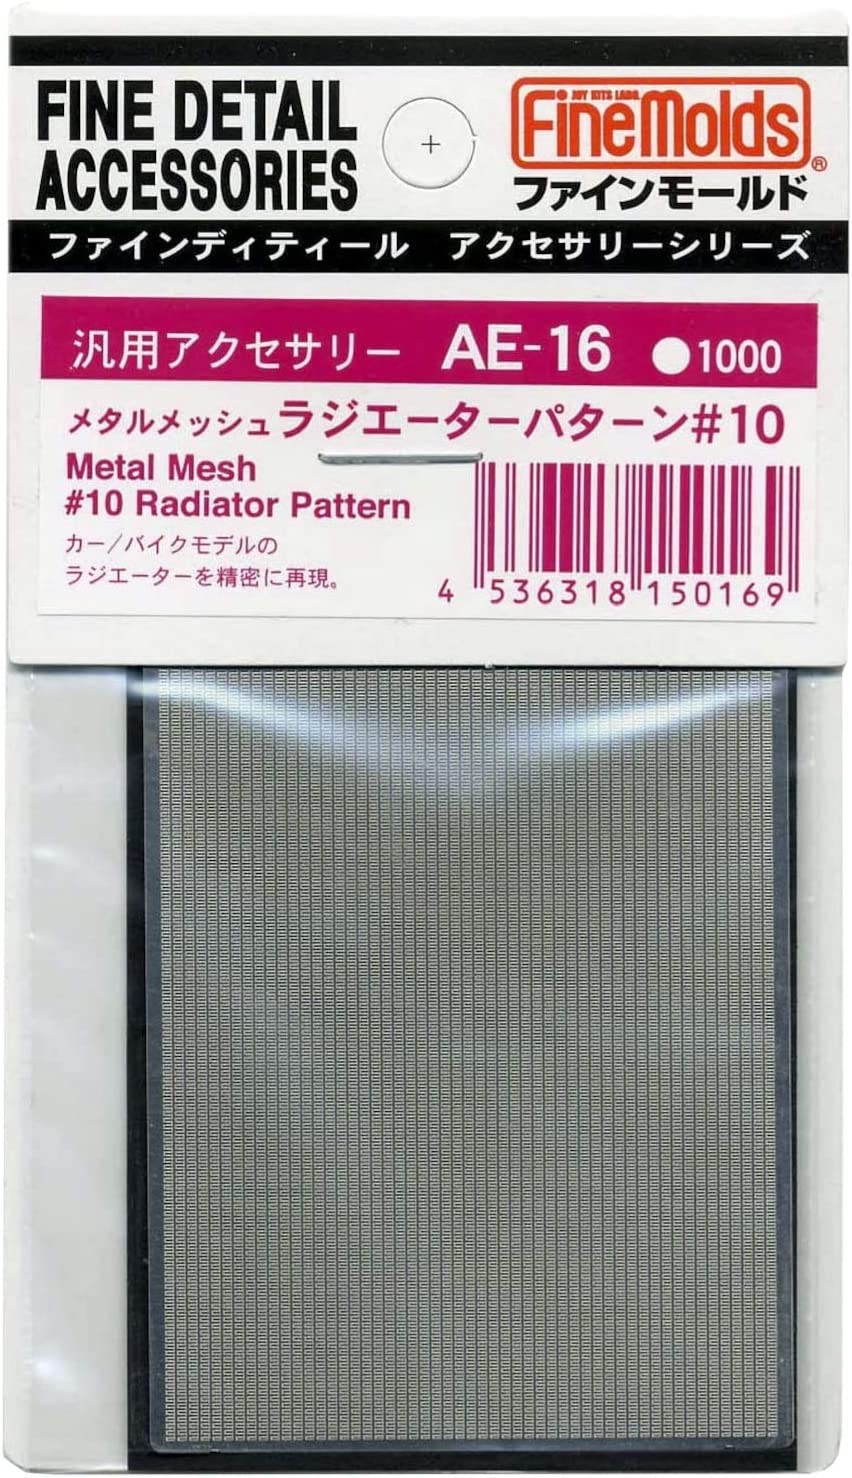 Metal Mesh #10 Radiator Pattern